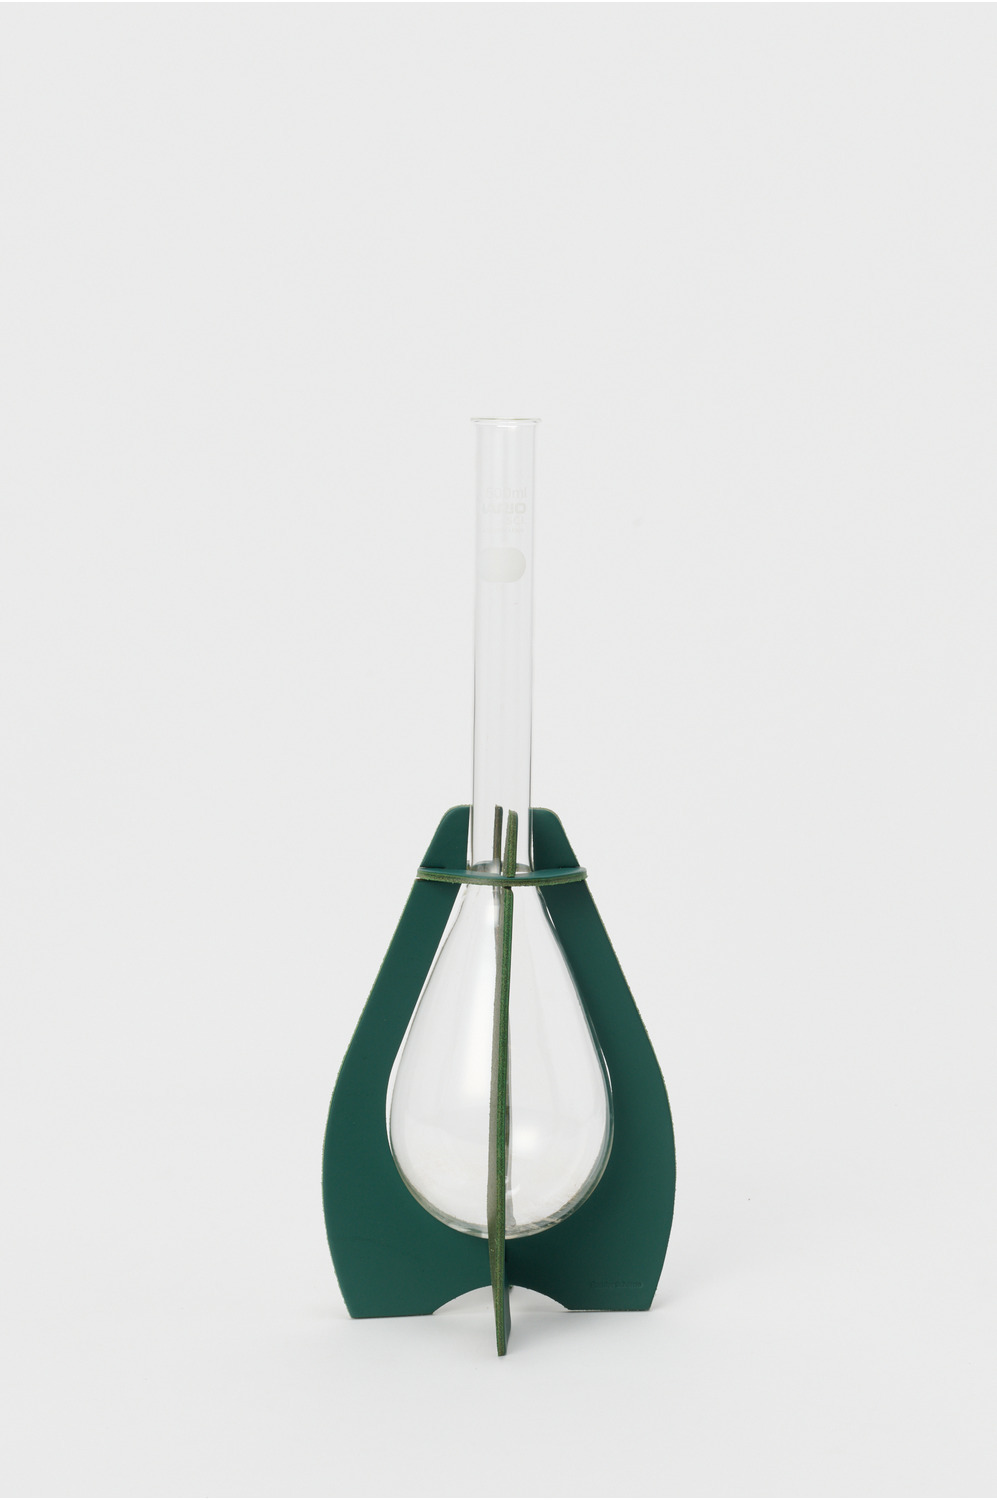 Kjeldahl flask long/500ml 詳細画像 green 2